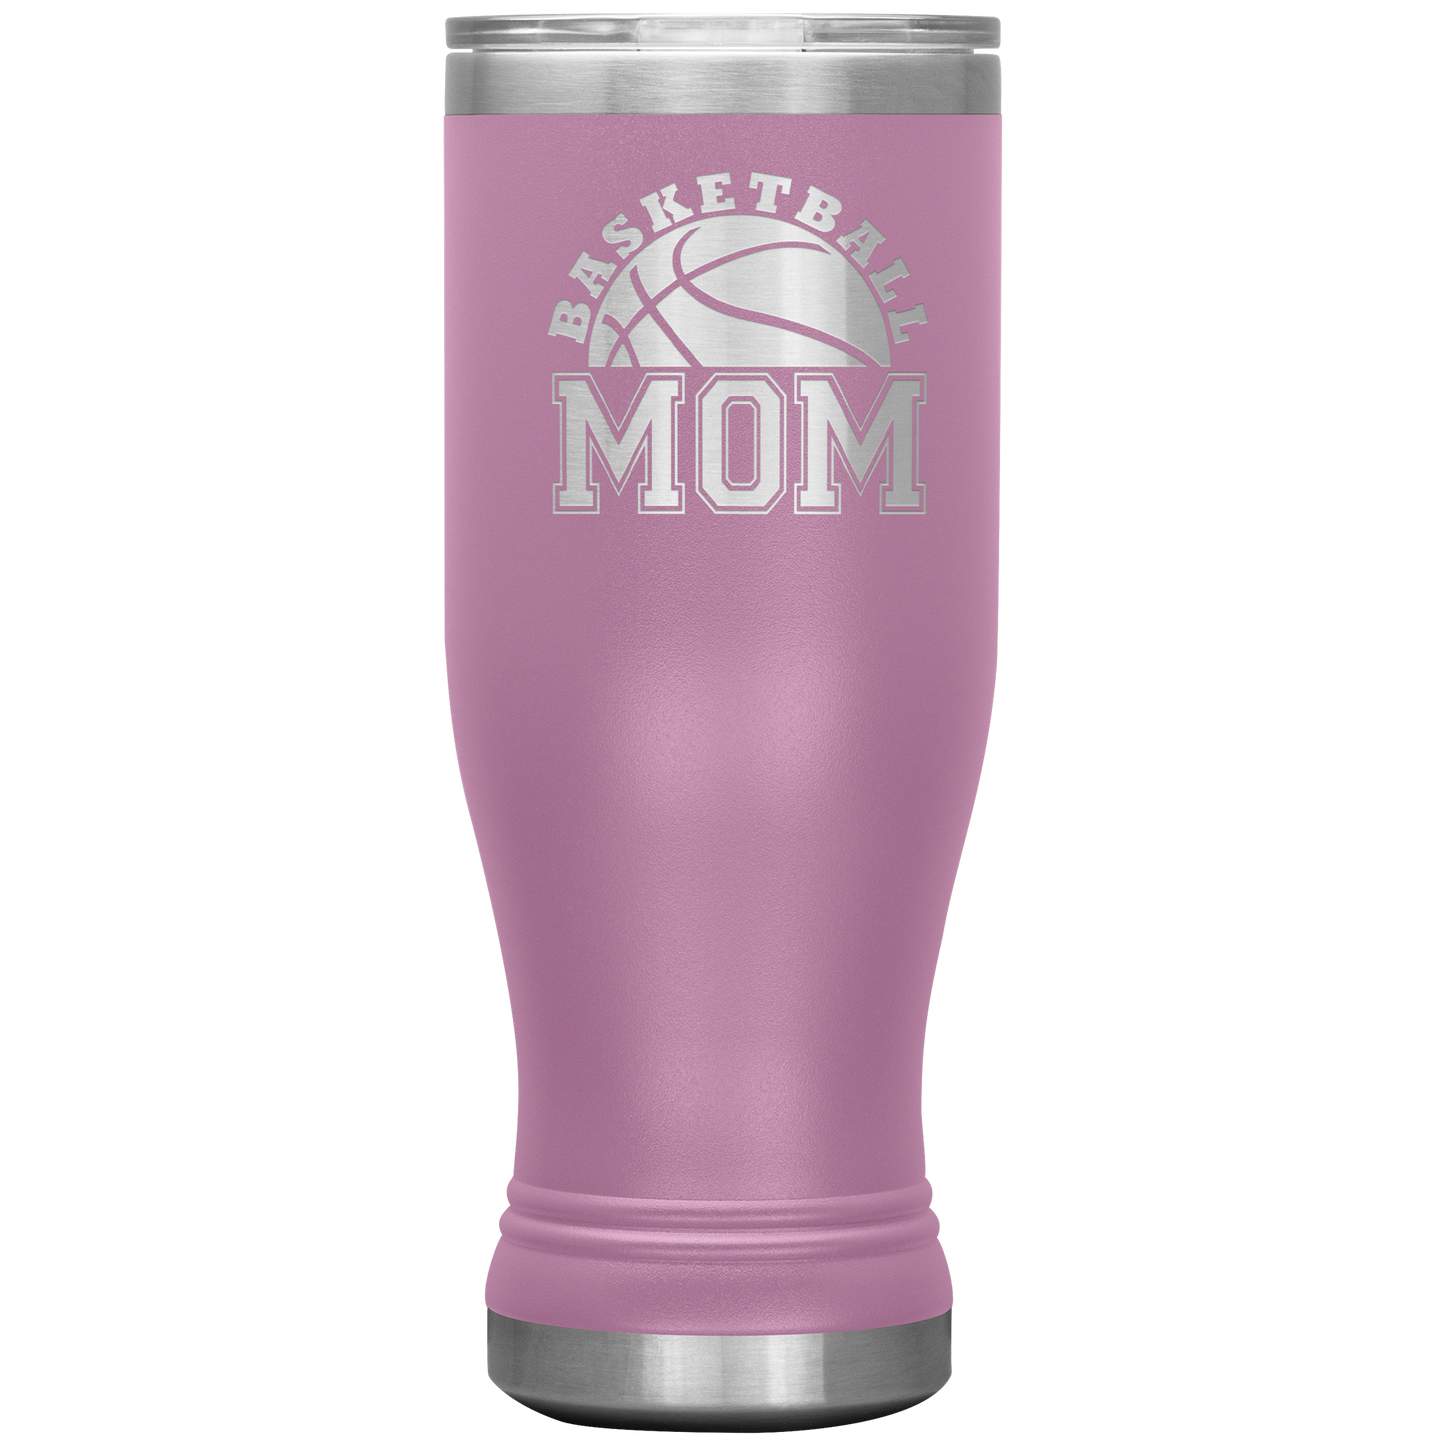 Basketball Mom Tumbler Gift for Mom Women Mom Gift Sports Mom Christmas Gift